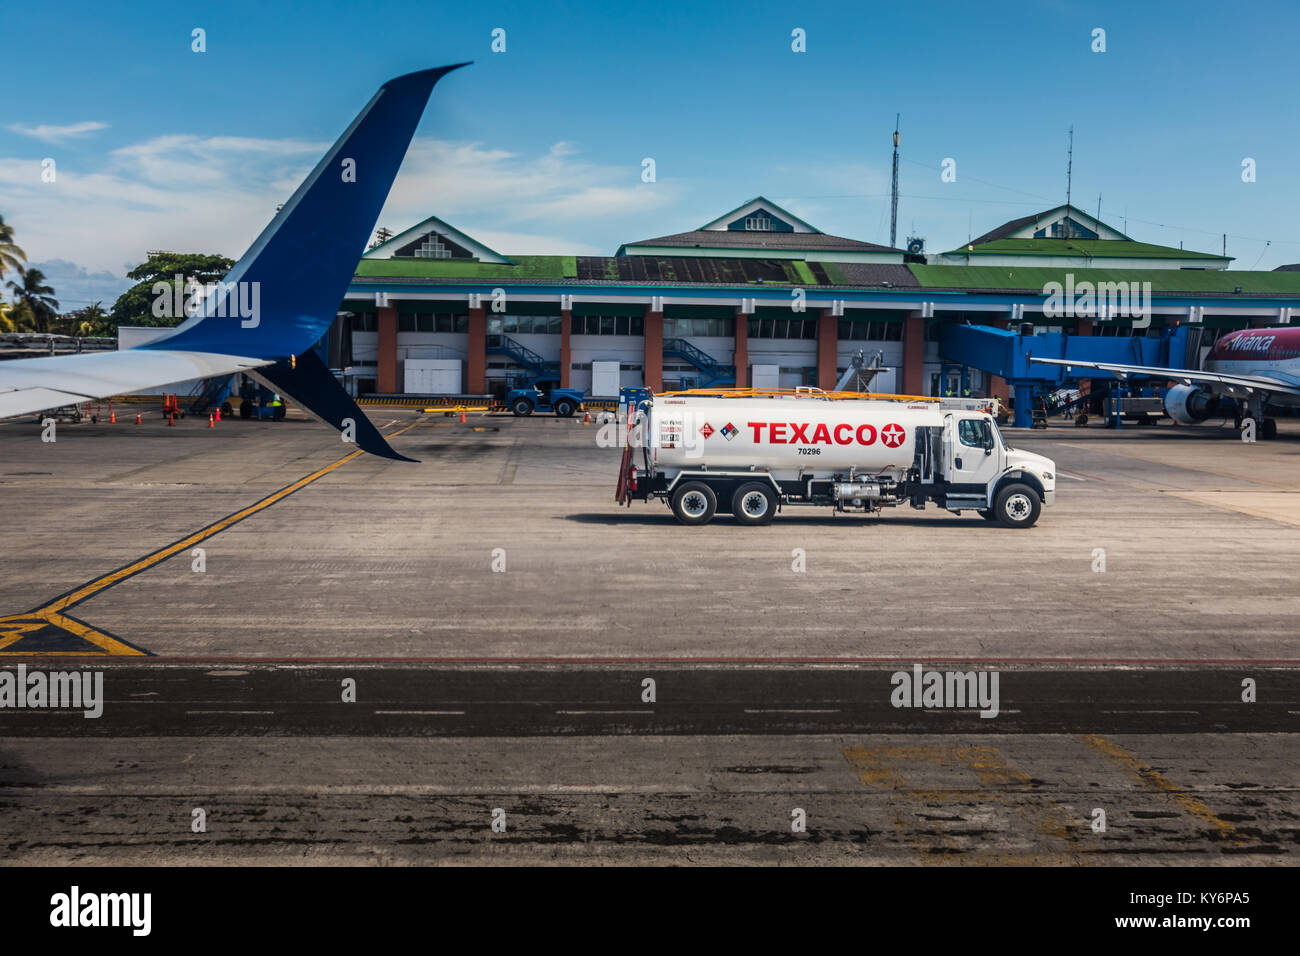 L'île de San Andrés, Colombie   vers mars 2017. Texaco camion-citerne de carburant sur la piste de l'aéroport de San Andres, Colombie Banque D'Images